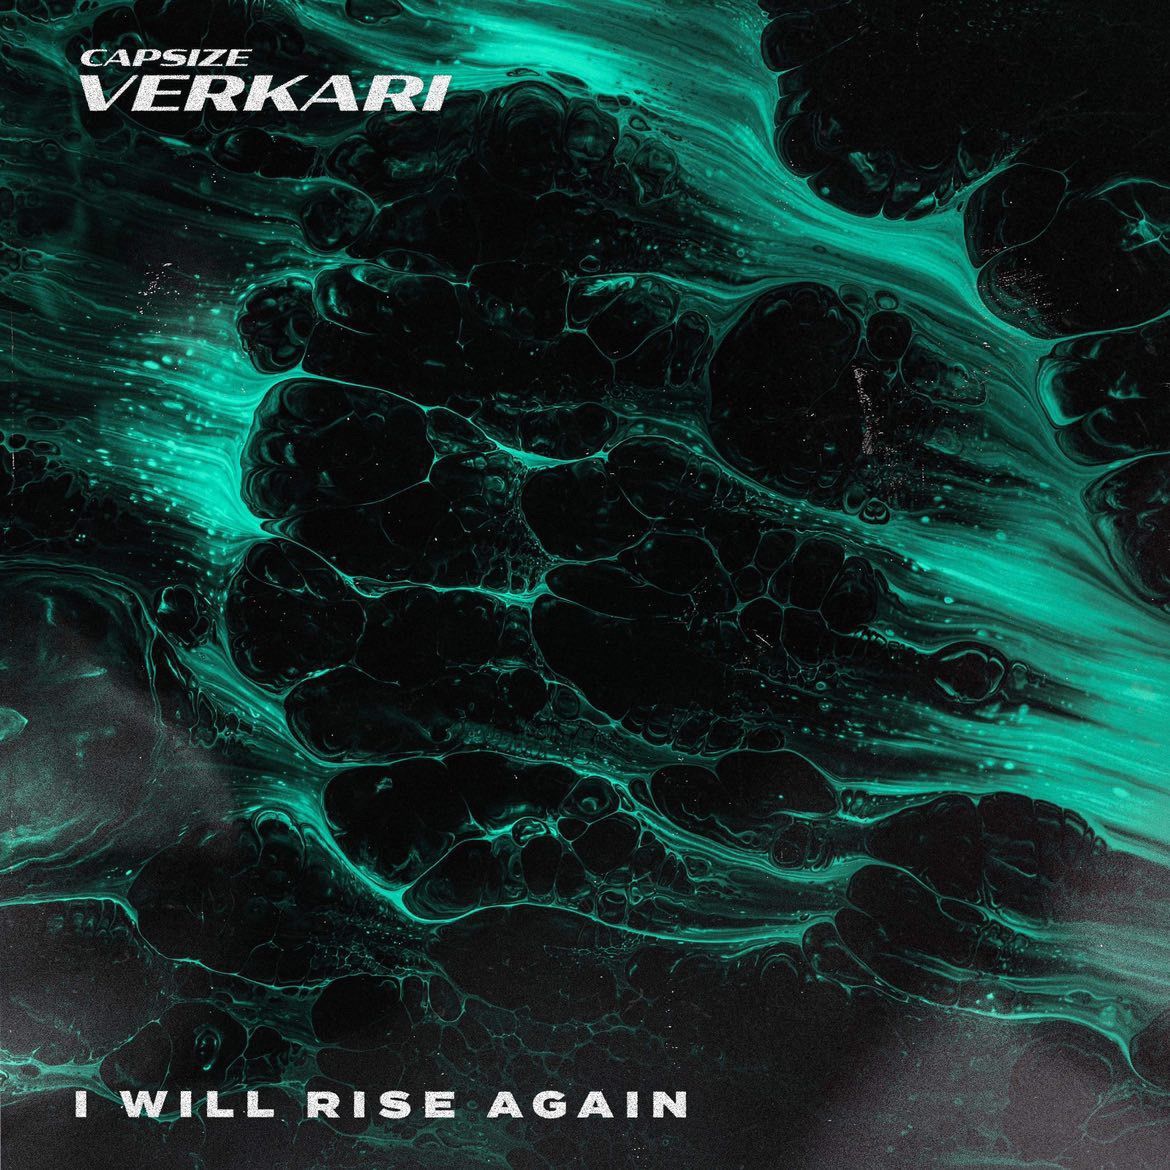 Song Review | "Capsize" - Verkari